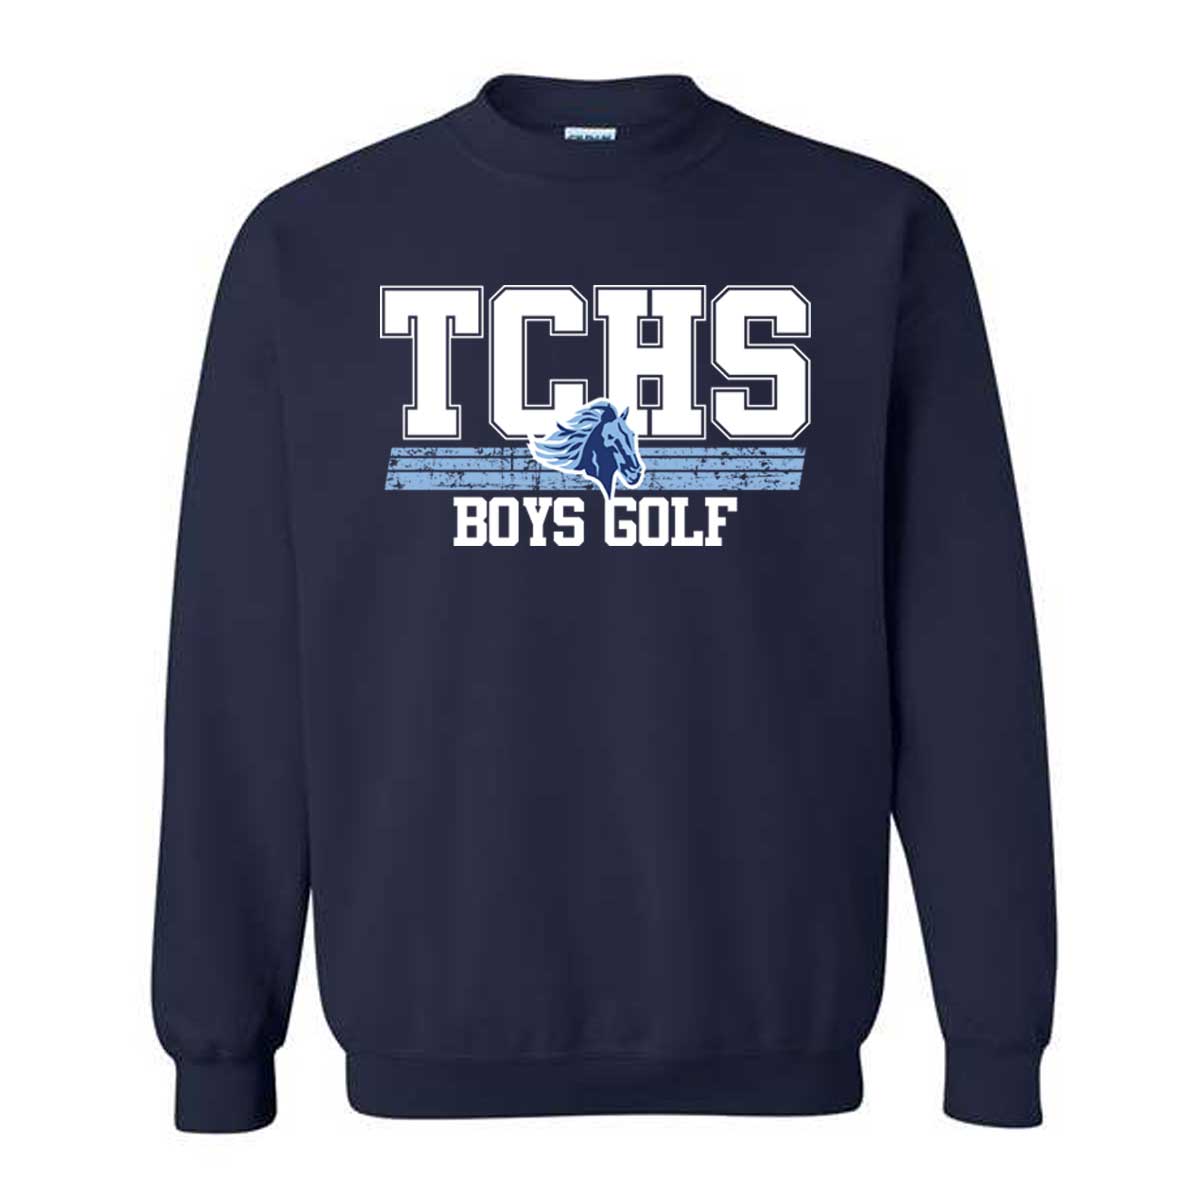 TCHS Boys Golf